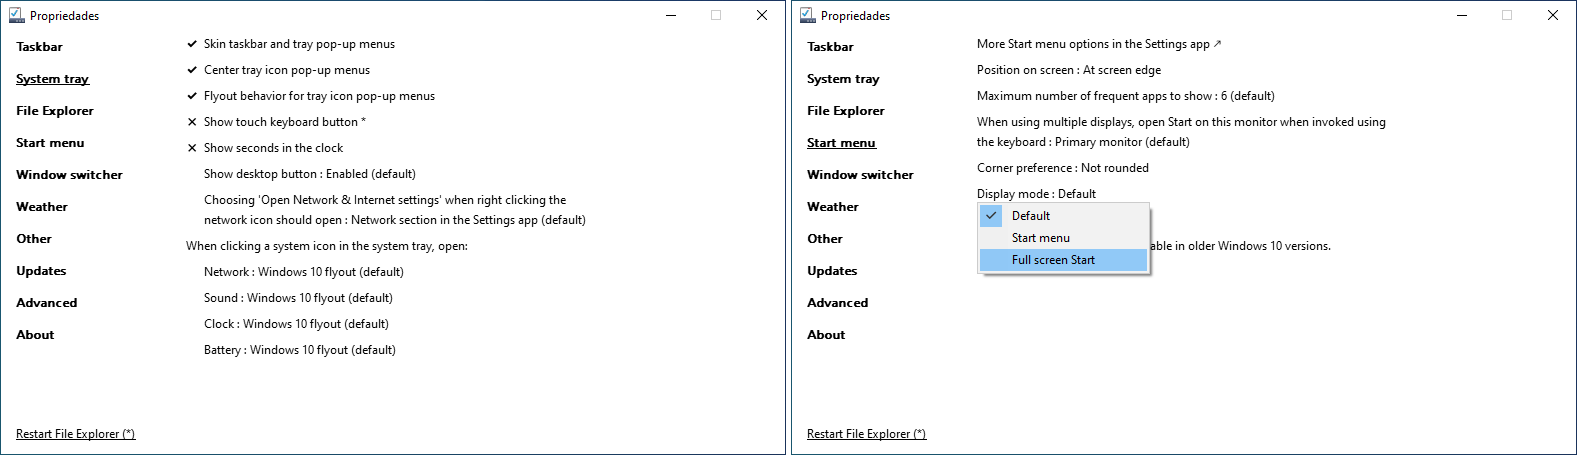 Menus de opções disponíveis do ExplorerPatcher no Windows 10. A imagem mostra 2 capturas de tela lado a lado. À esquerda mostra as opções disponíveis em "System tray". À direita mostra as opções disponíveis em "Start menu".